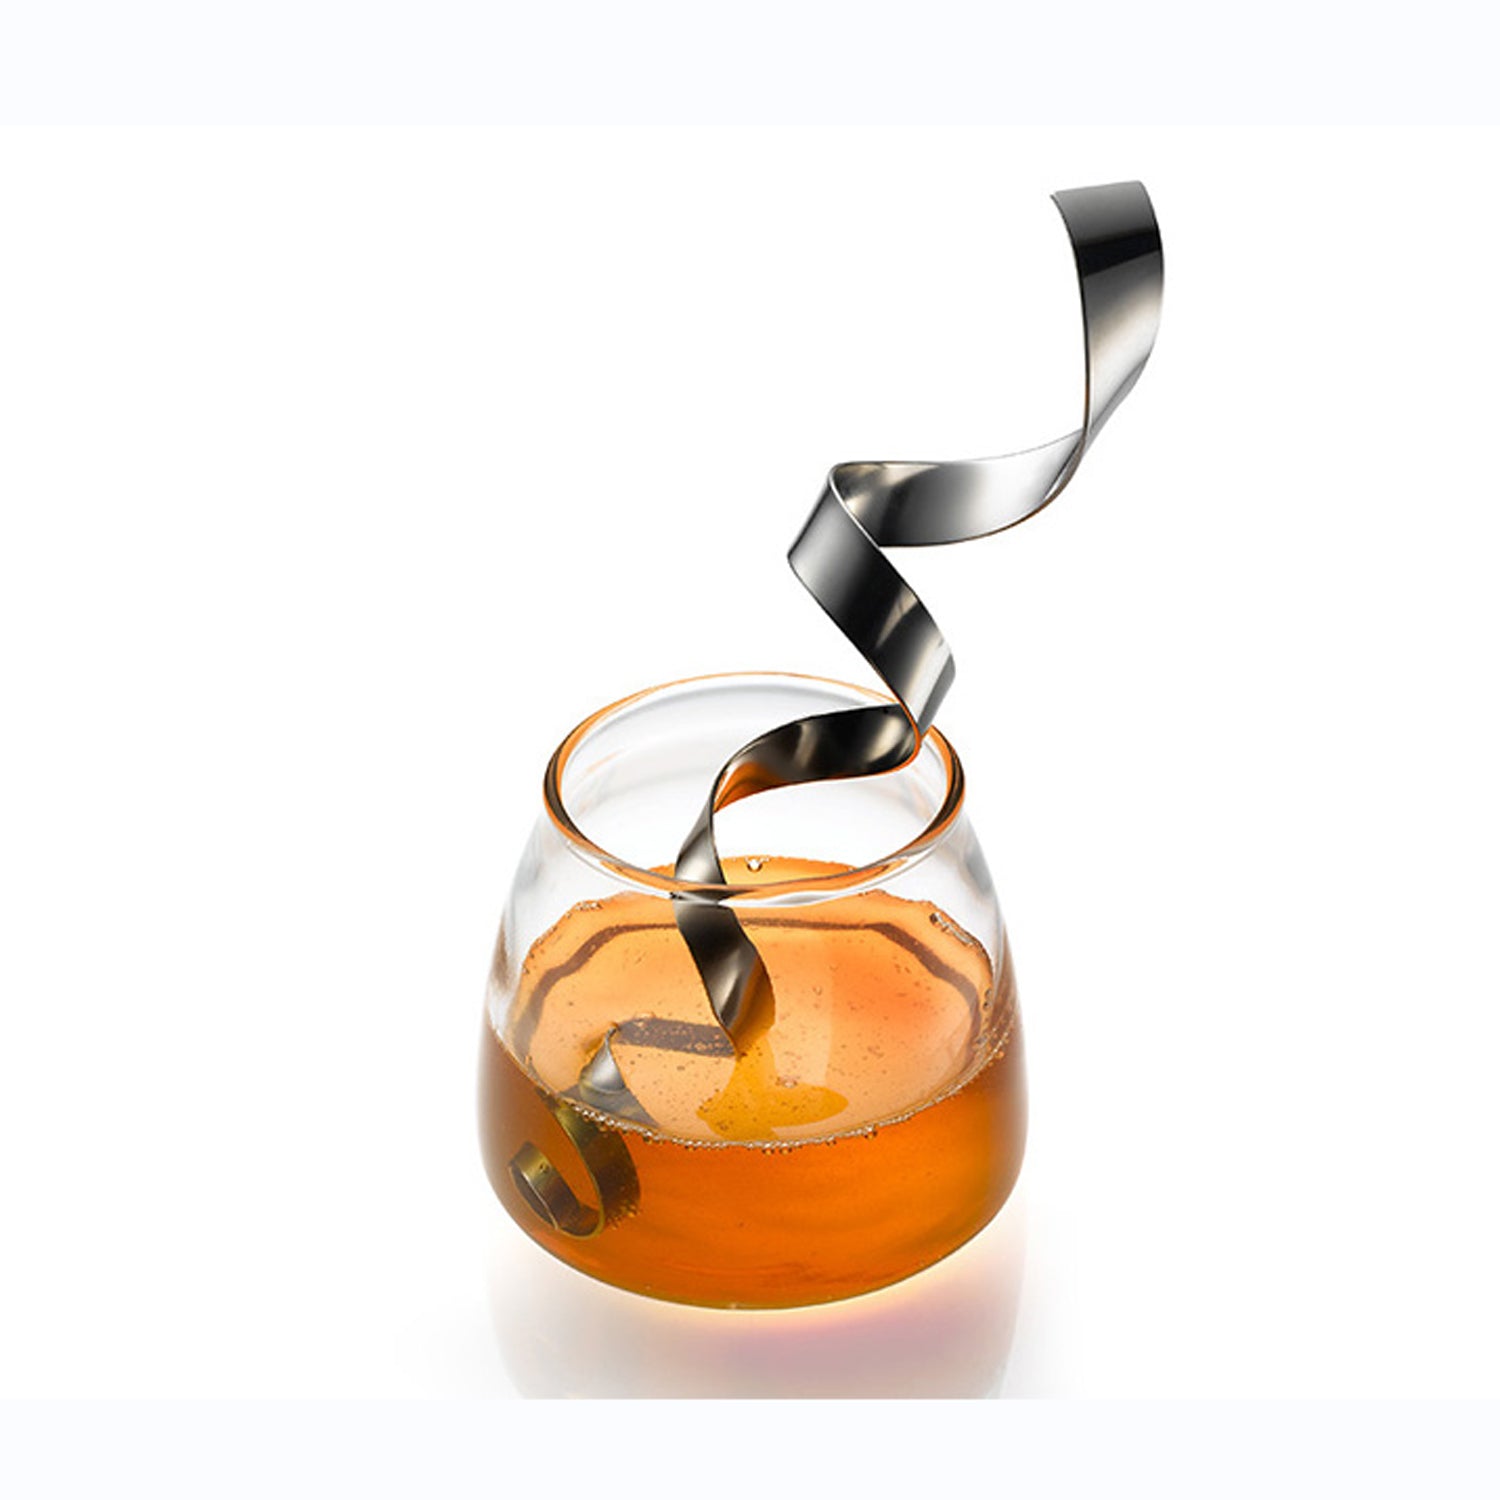 Laura Cowan - Ribbon honey dipper and honey pot